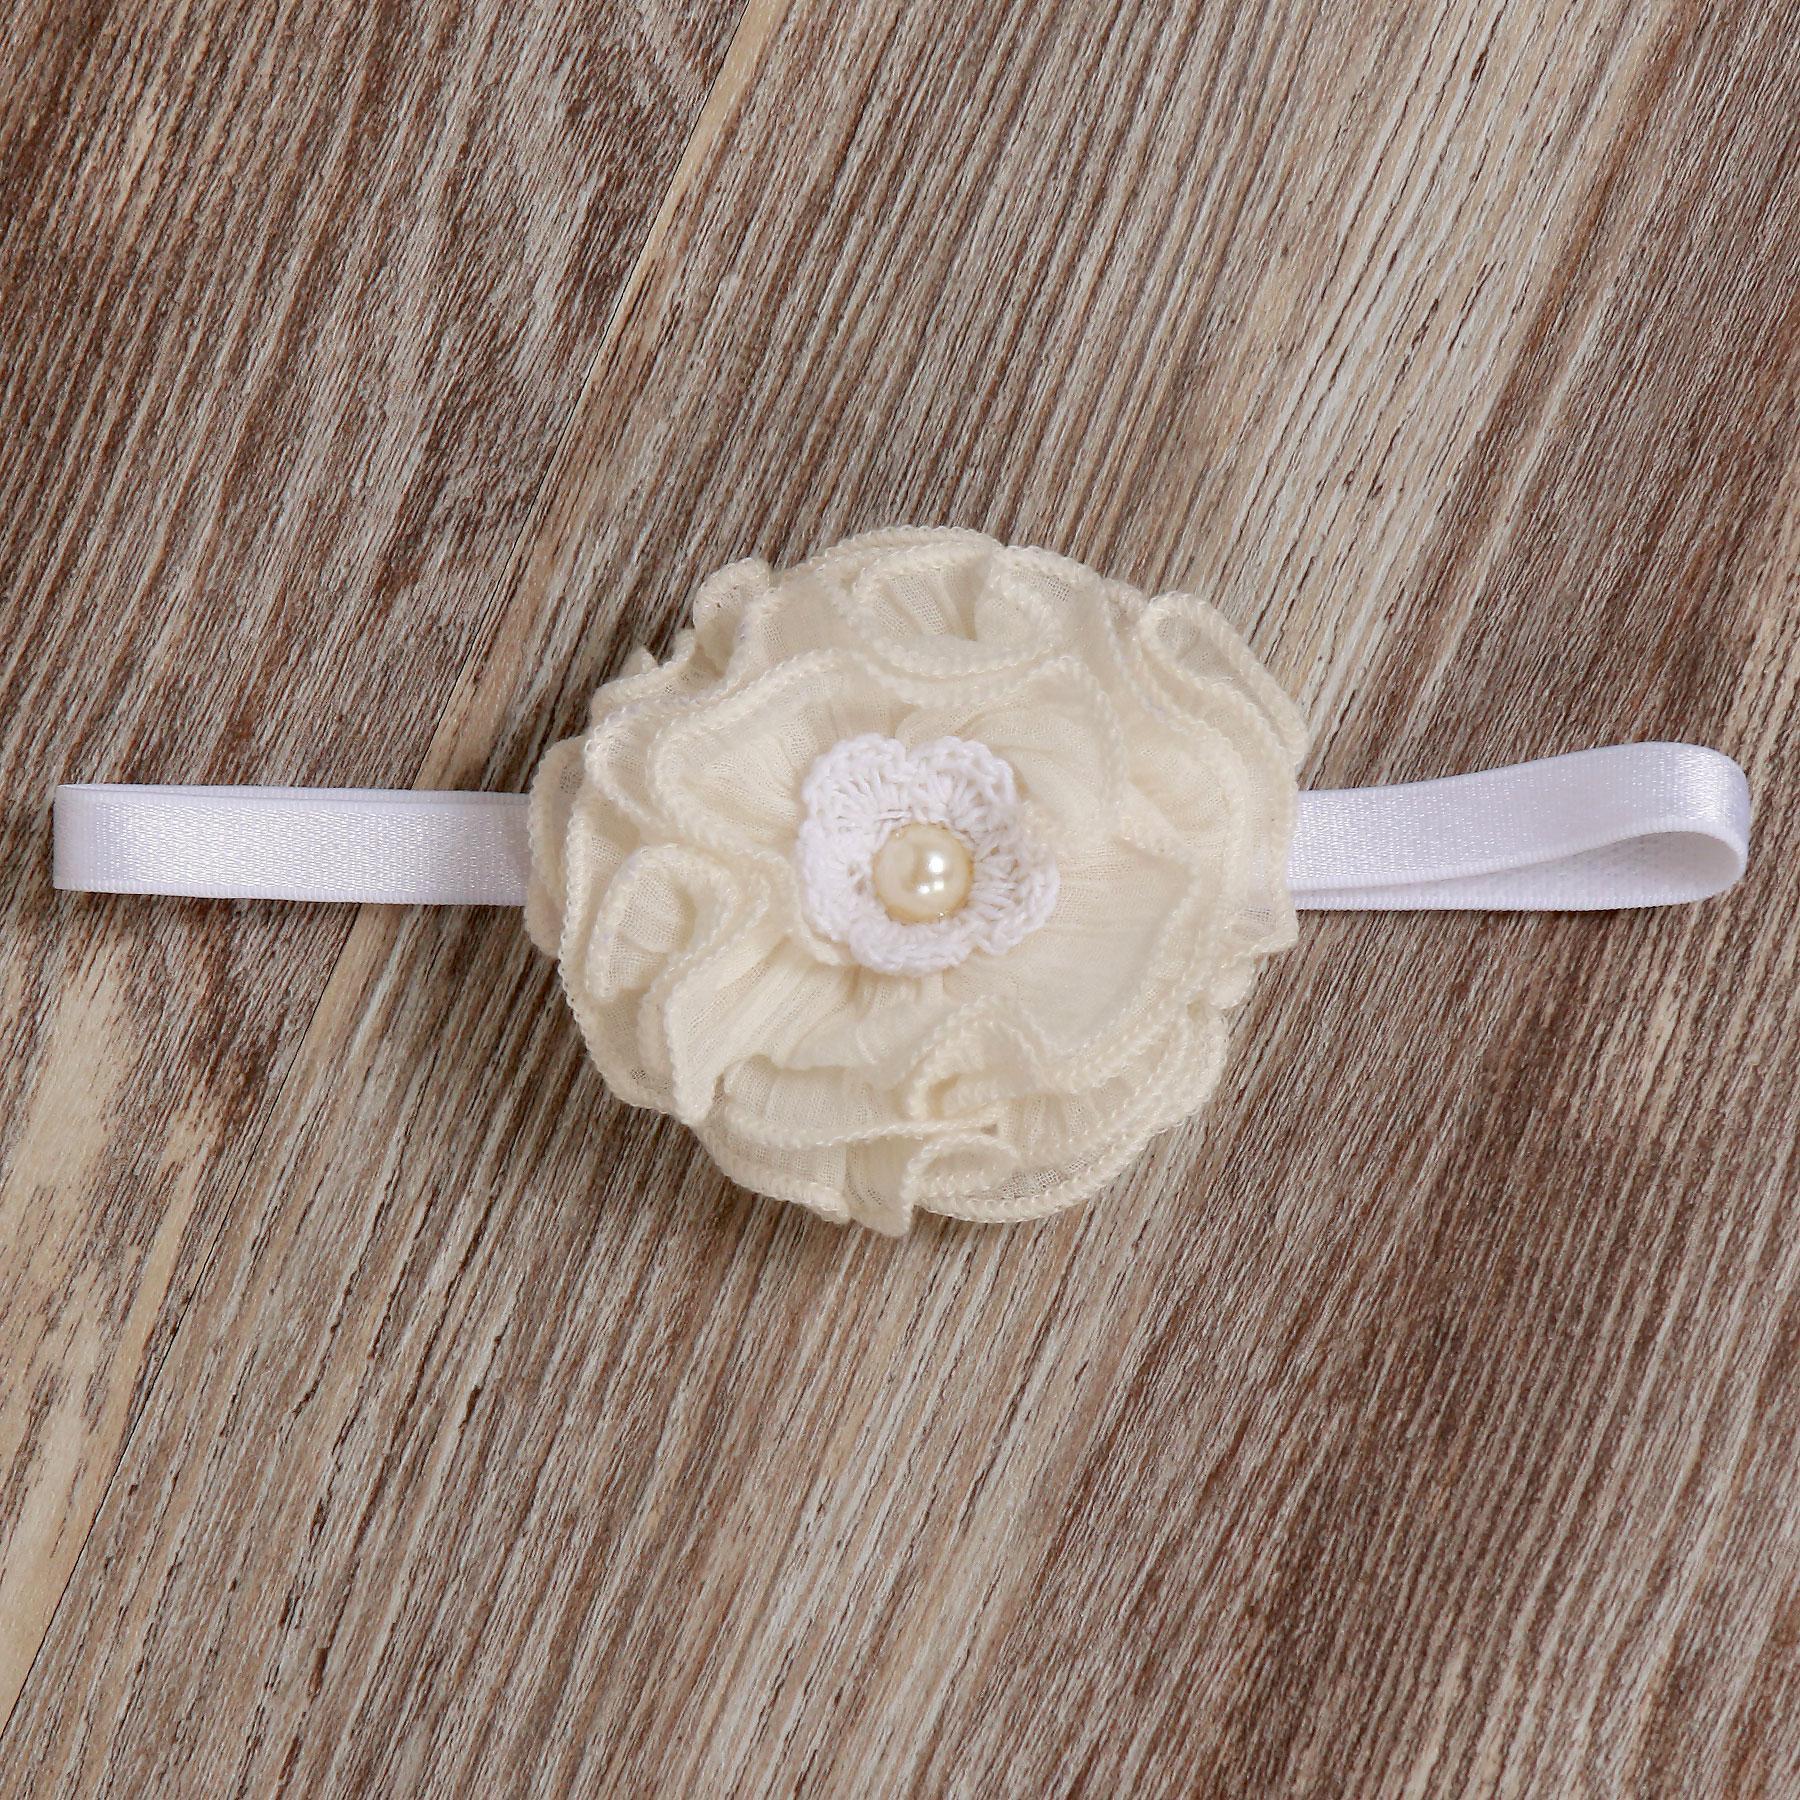 Ruffle Baby Flower Elastic Headband in Vanilla